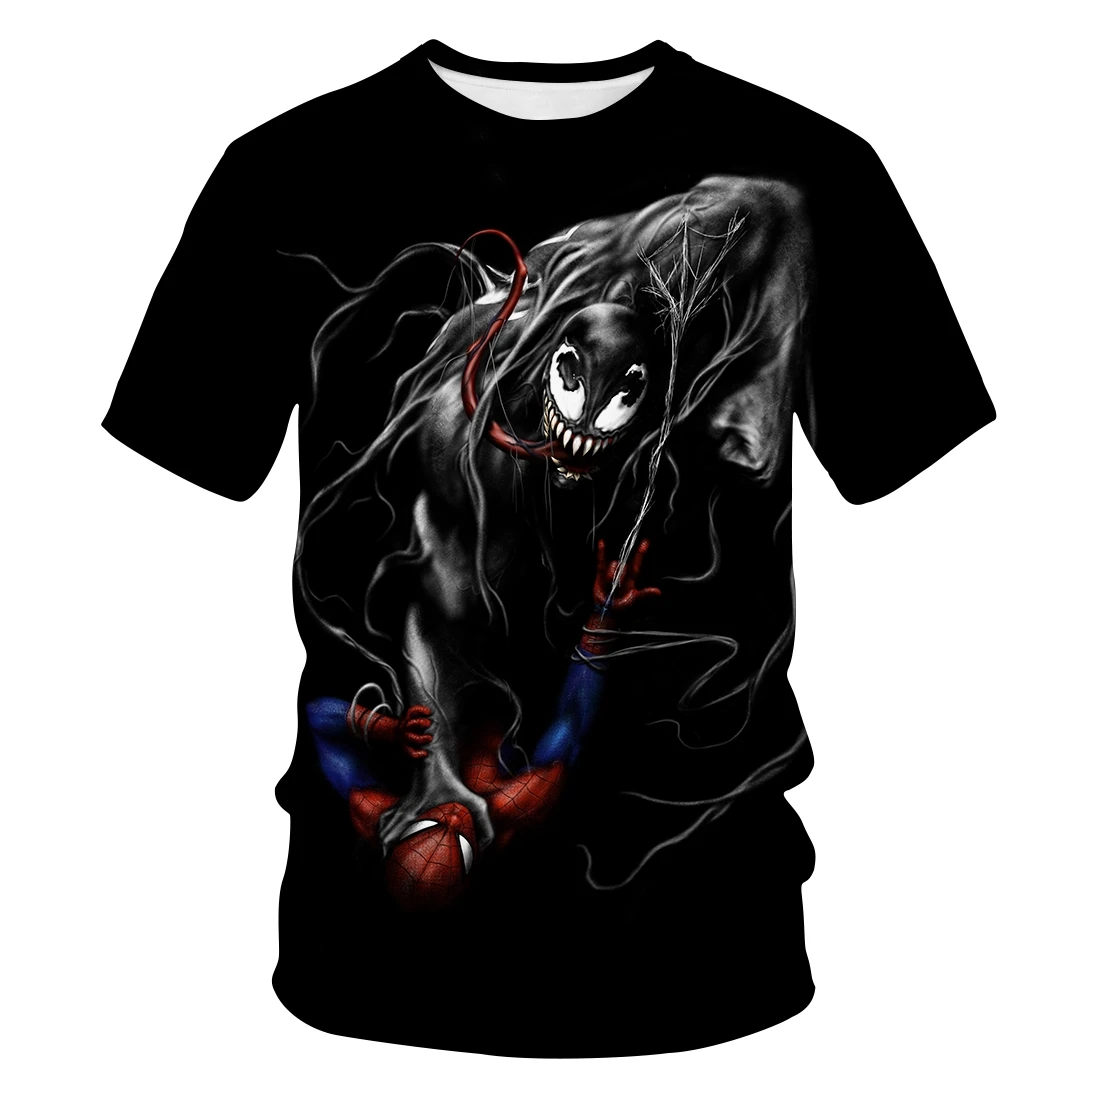 Venom vs Spider-Man tshirt Marvel fashion casual short-sleeved shirt Men/women fashion trend youth cool T-shirt Men